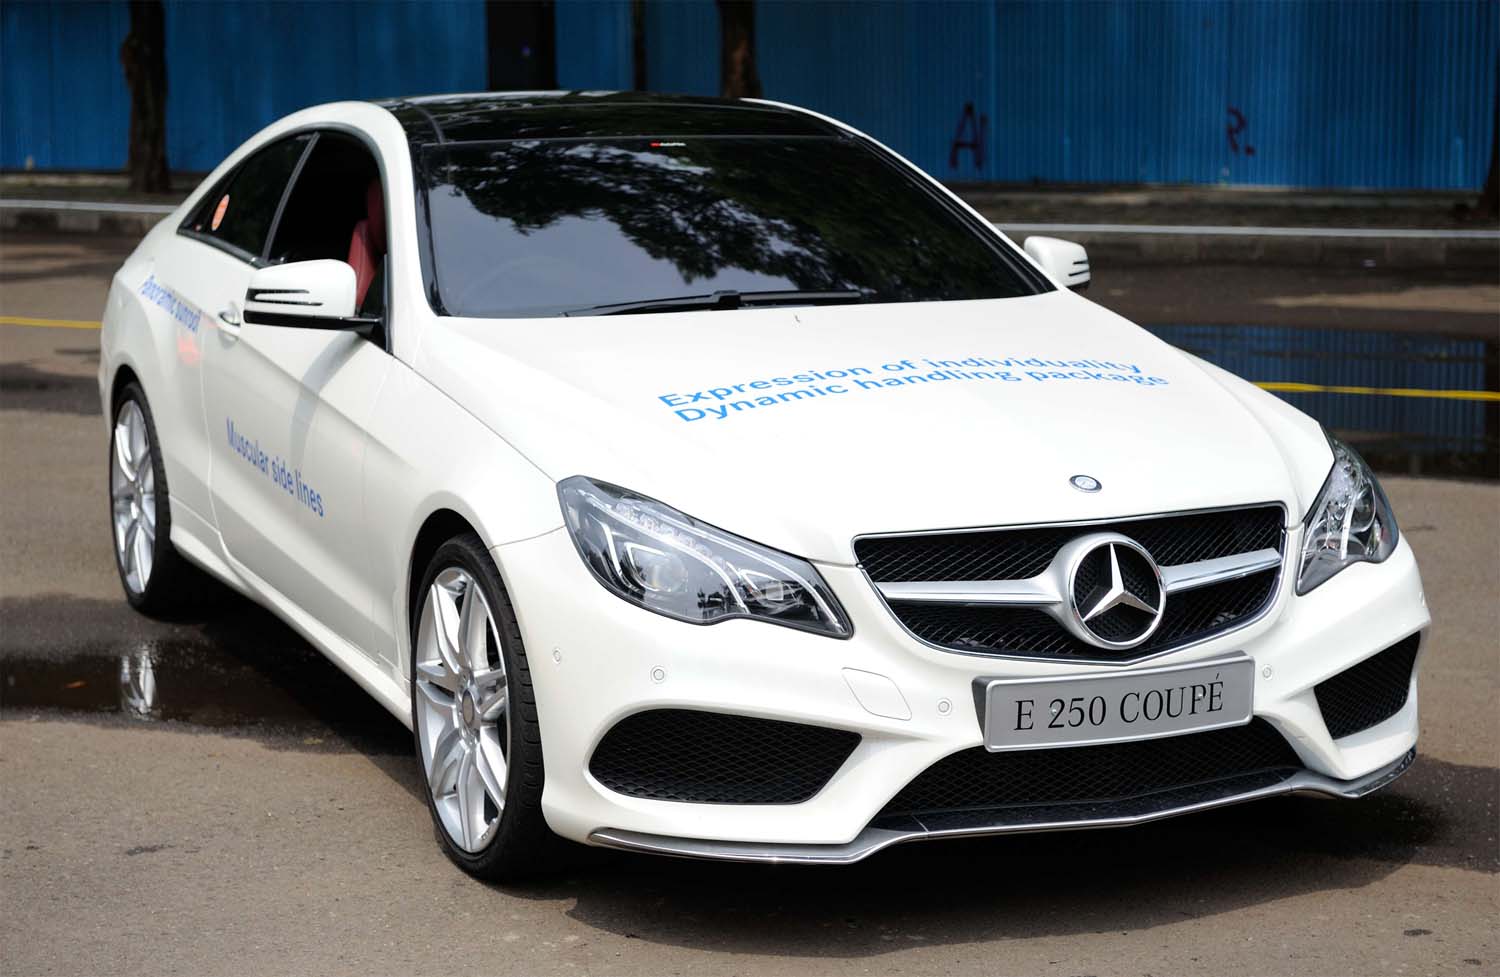 Beli Mobil  Mercedes  Harga Khusus di  Parkit Senayan 